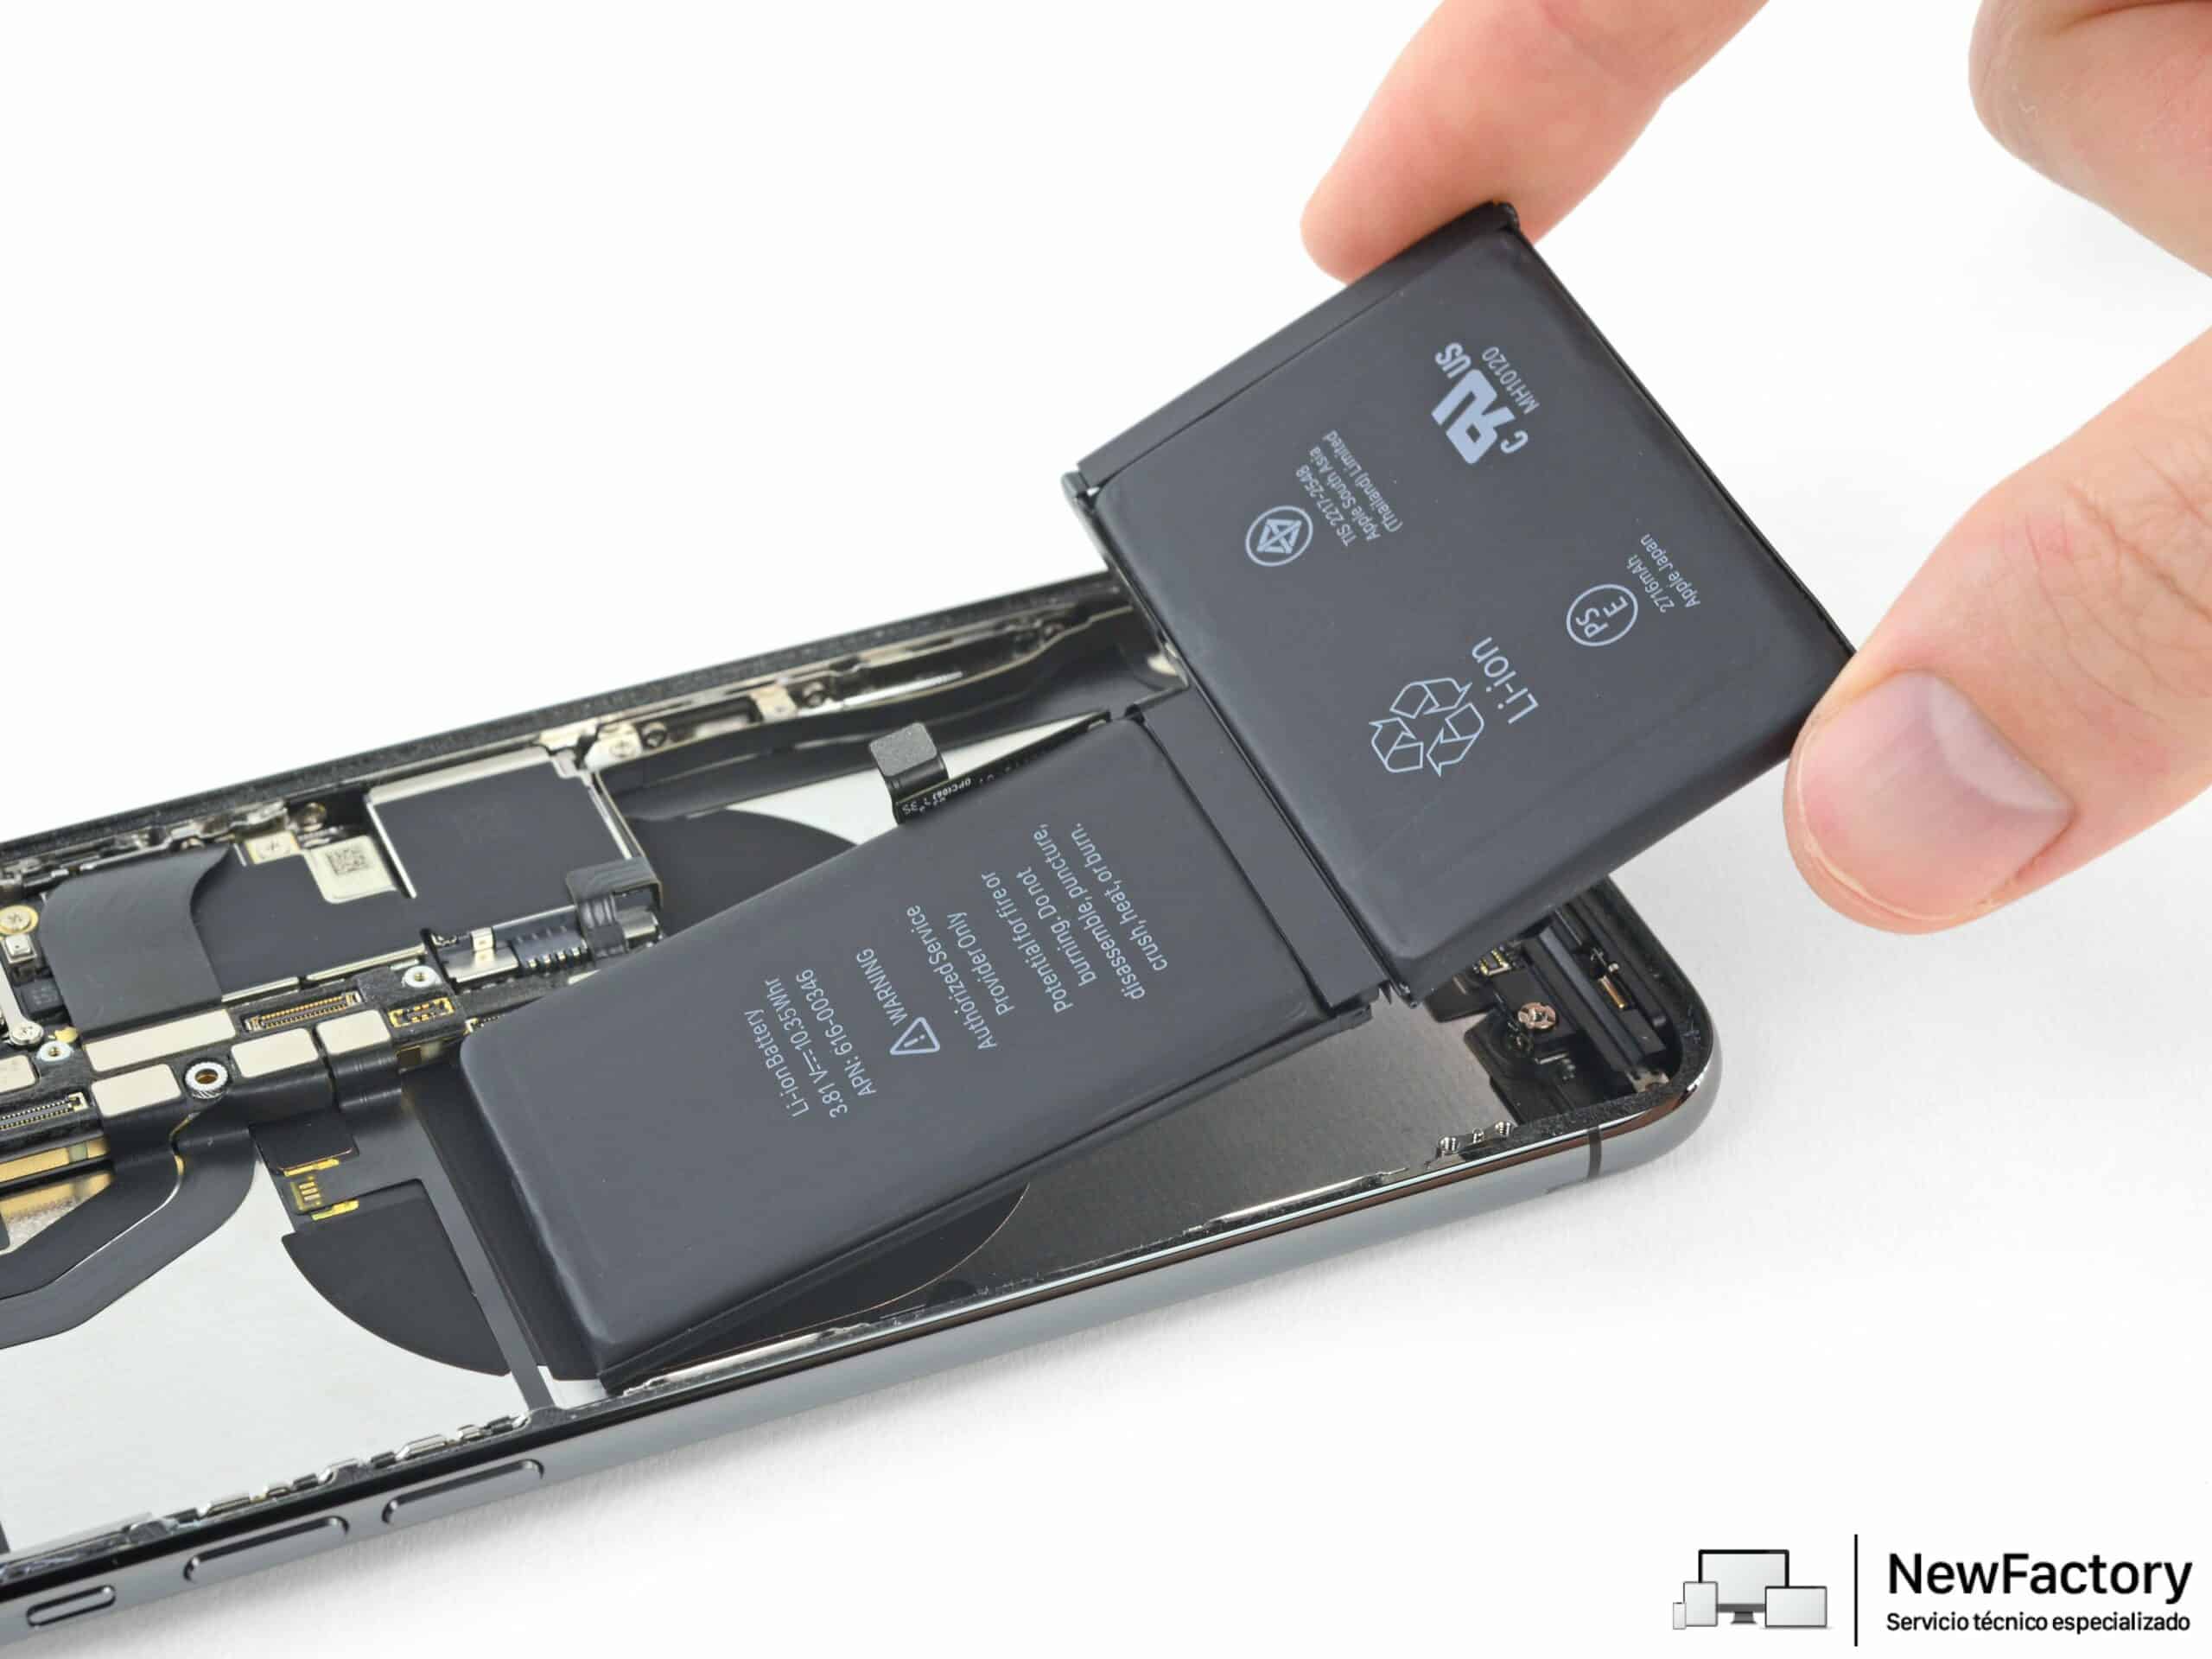 El despiece del iPhone 12 Pro Max confirma la capacidad de la batería